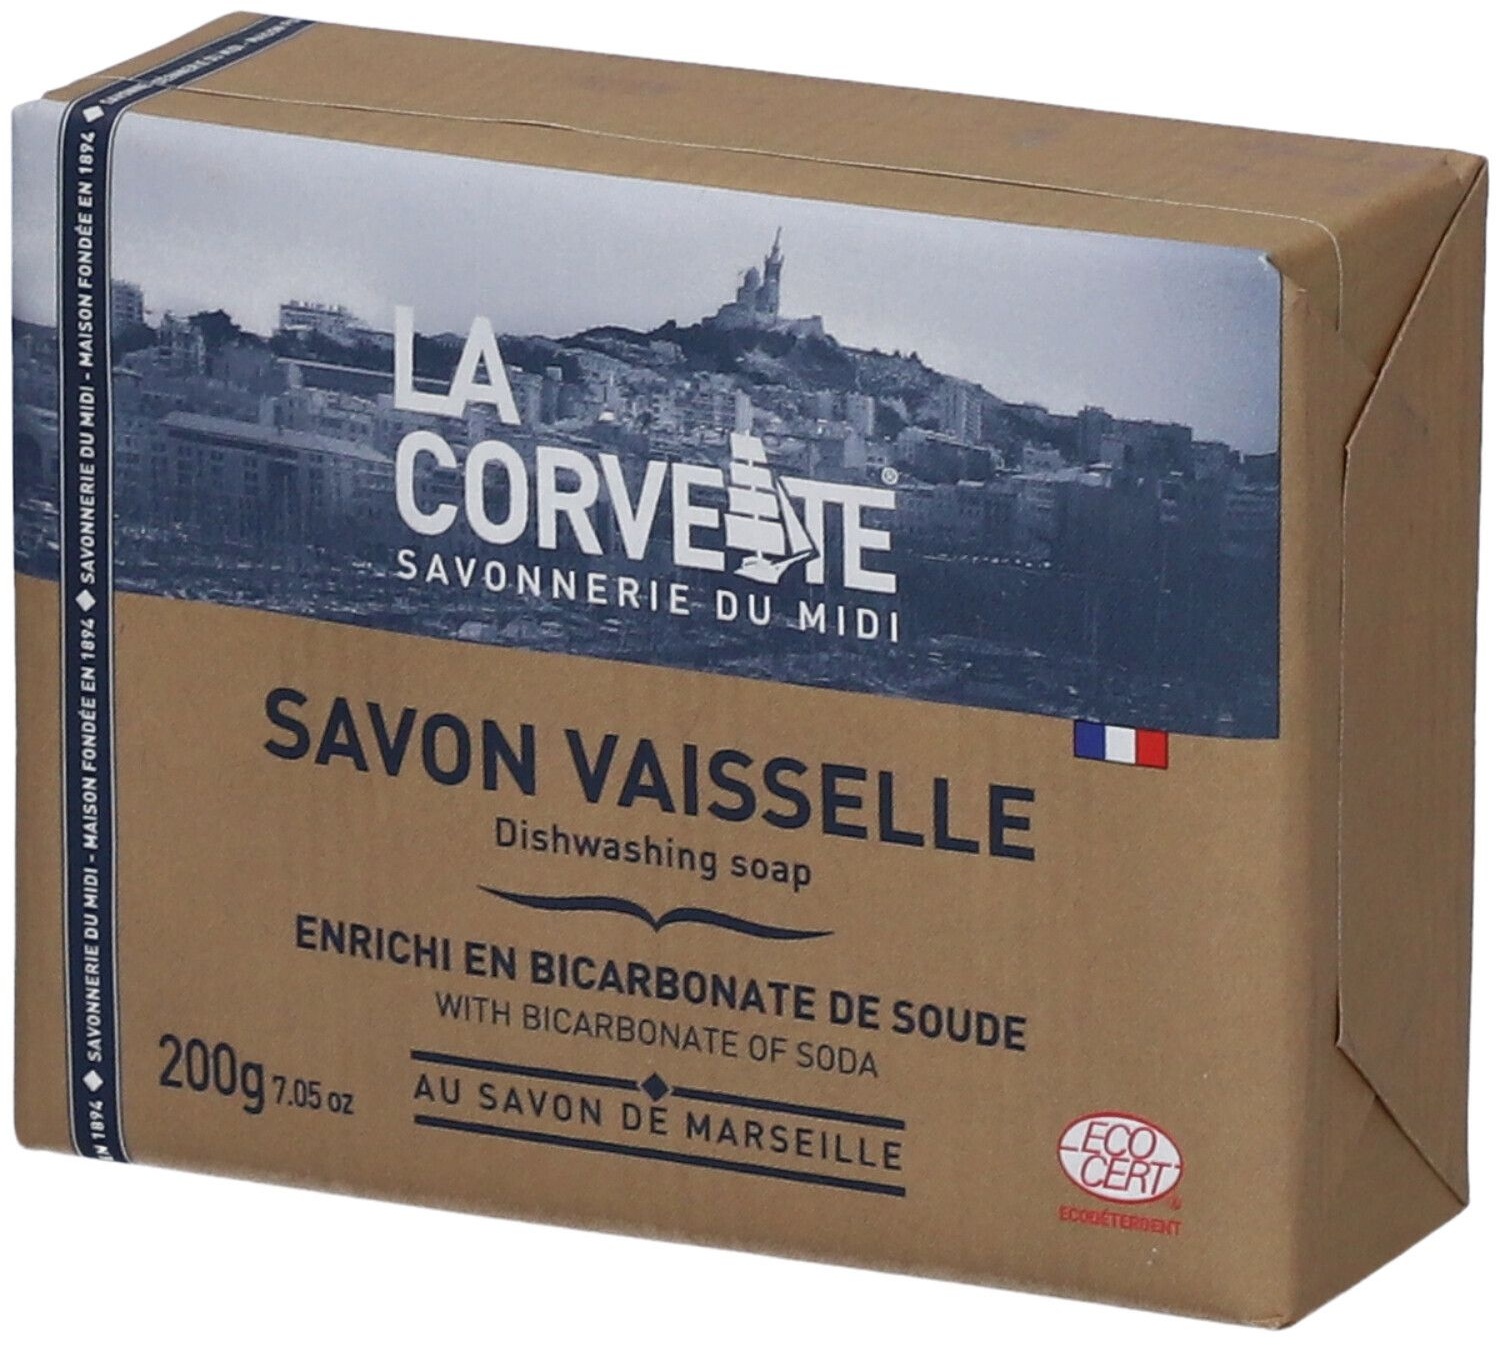 LA CORVETTE Savon vaisselle au Savon de Marseille enrichi en bicarbonate de soude 200 g savon